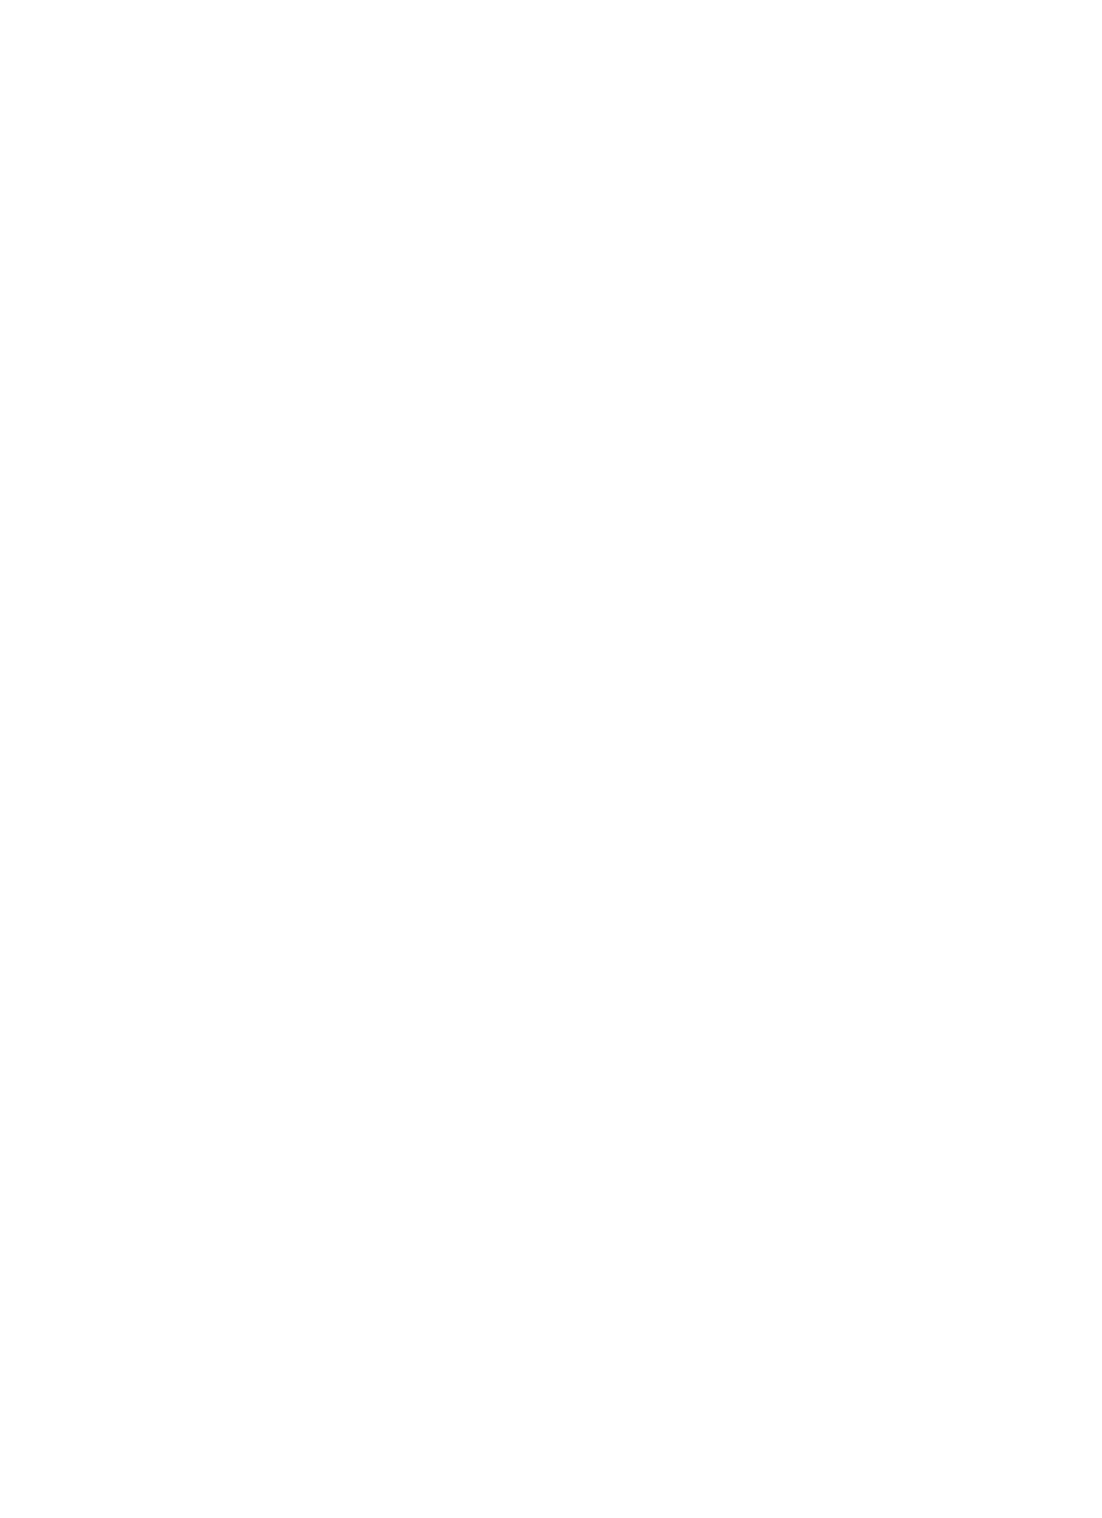 red-ribbon-week-logo-white